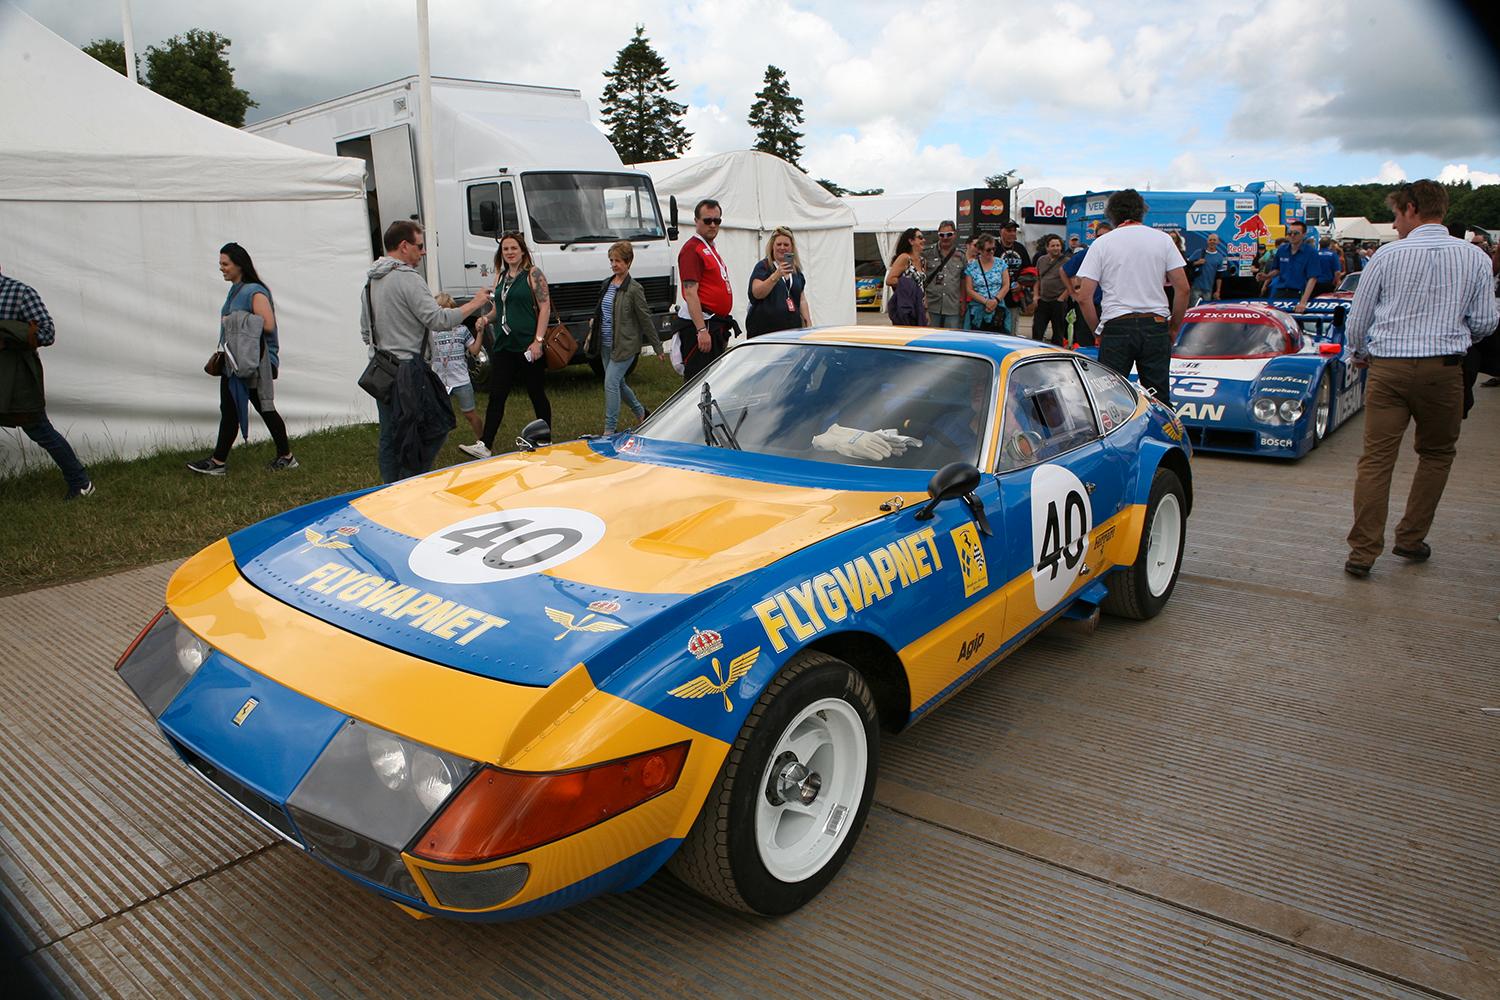 Svenska flygvapnet var representerat och visade färgerna. Detta på en Ferrari 356 GTB/4 – ett härligt ”vapen” som faktiskt vunnit GT-klassen på Le Mans tre gånger samt har en Daytona-seger.